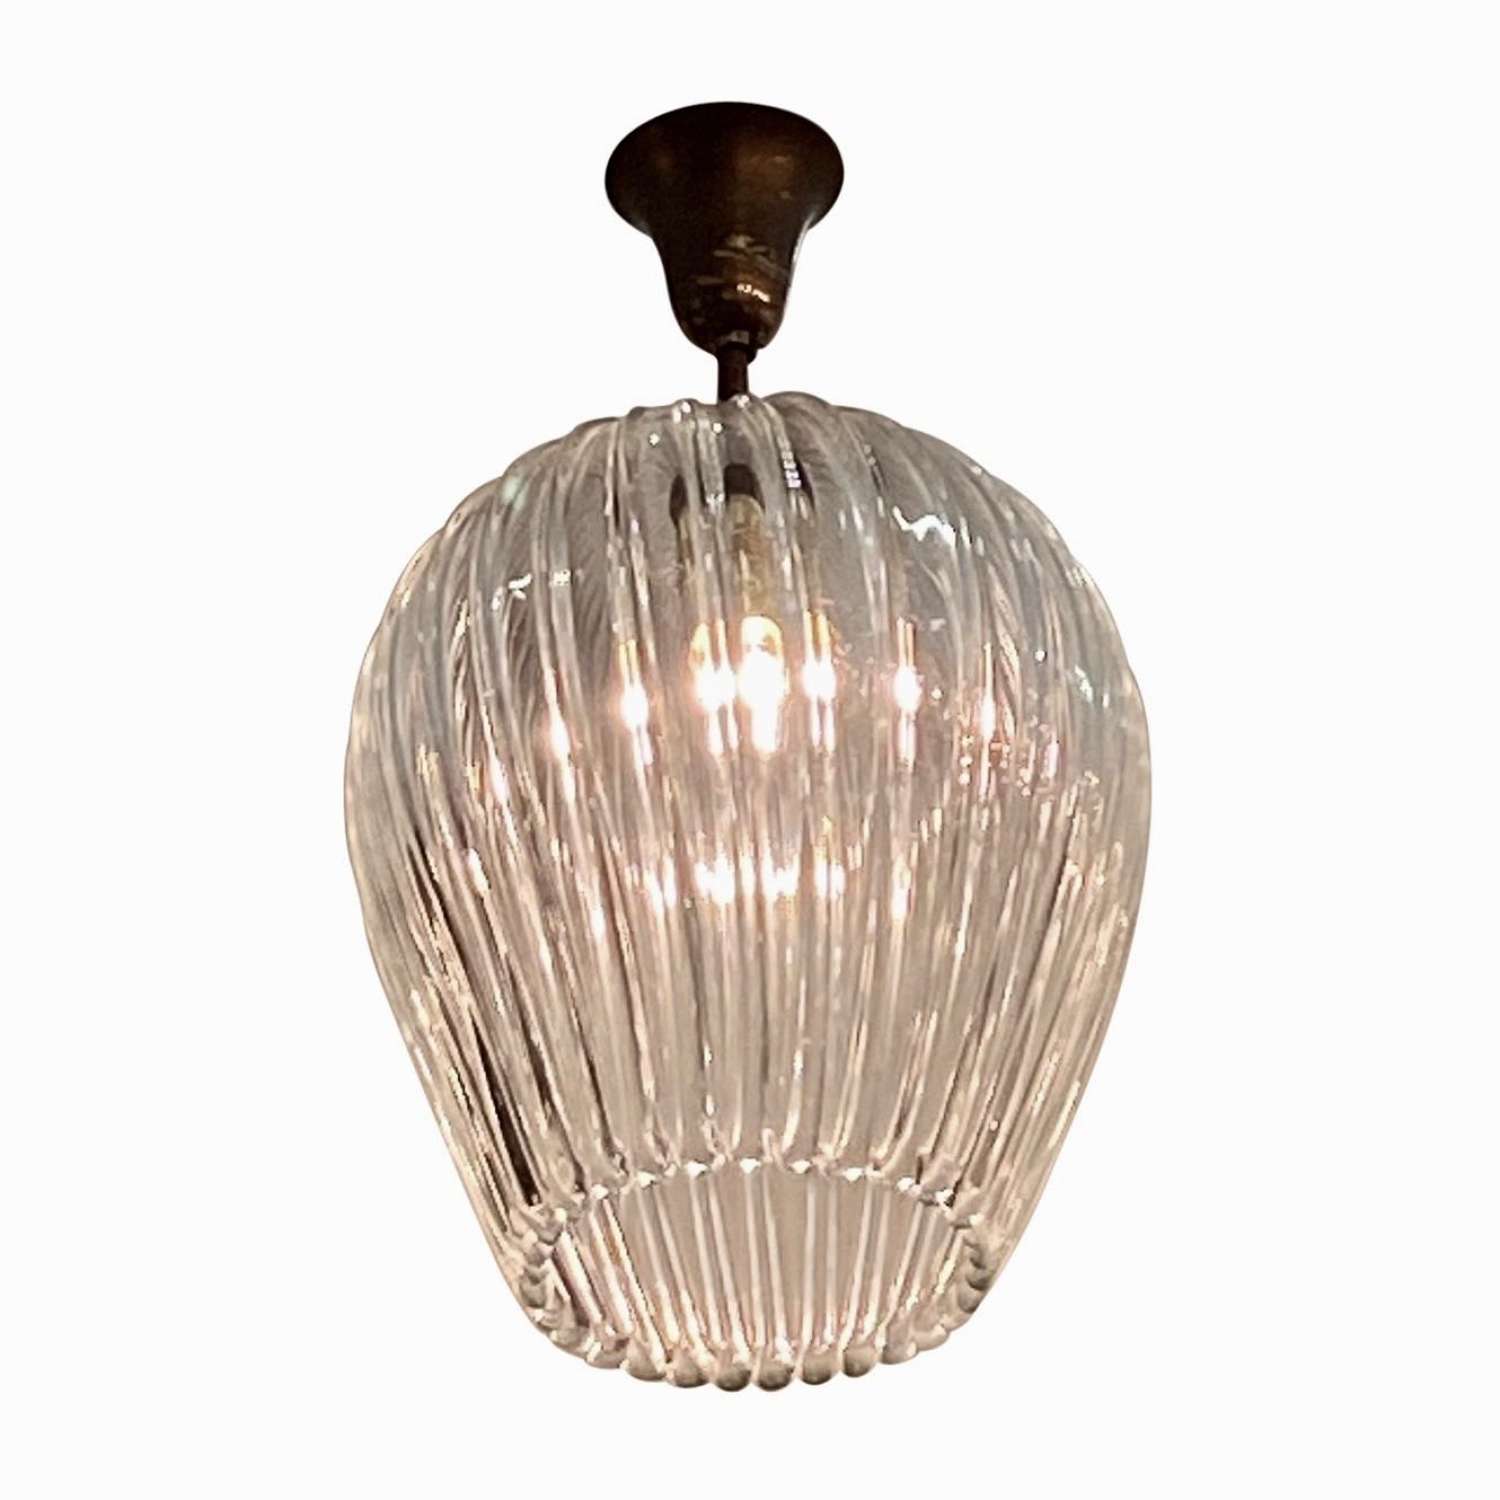 1940's Murano glass lantern attributed to Barovier